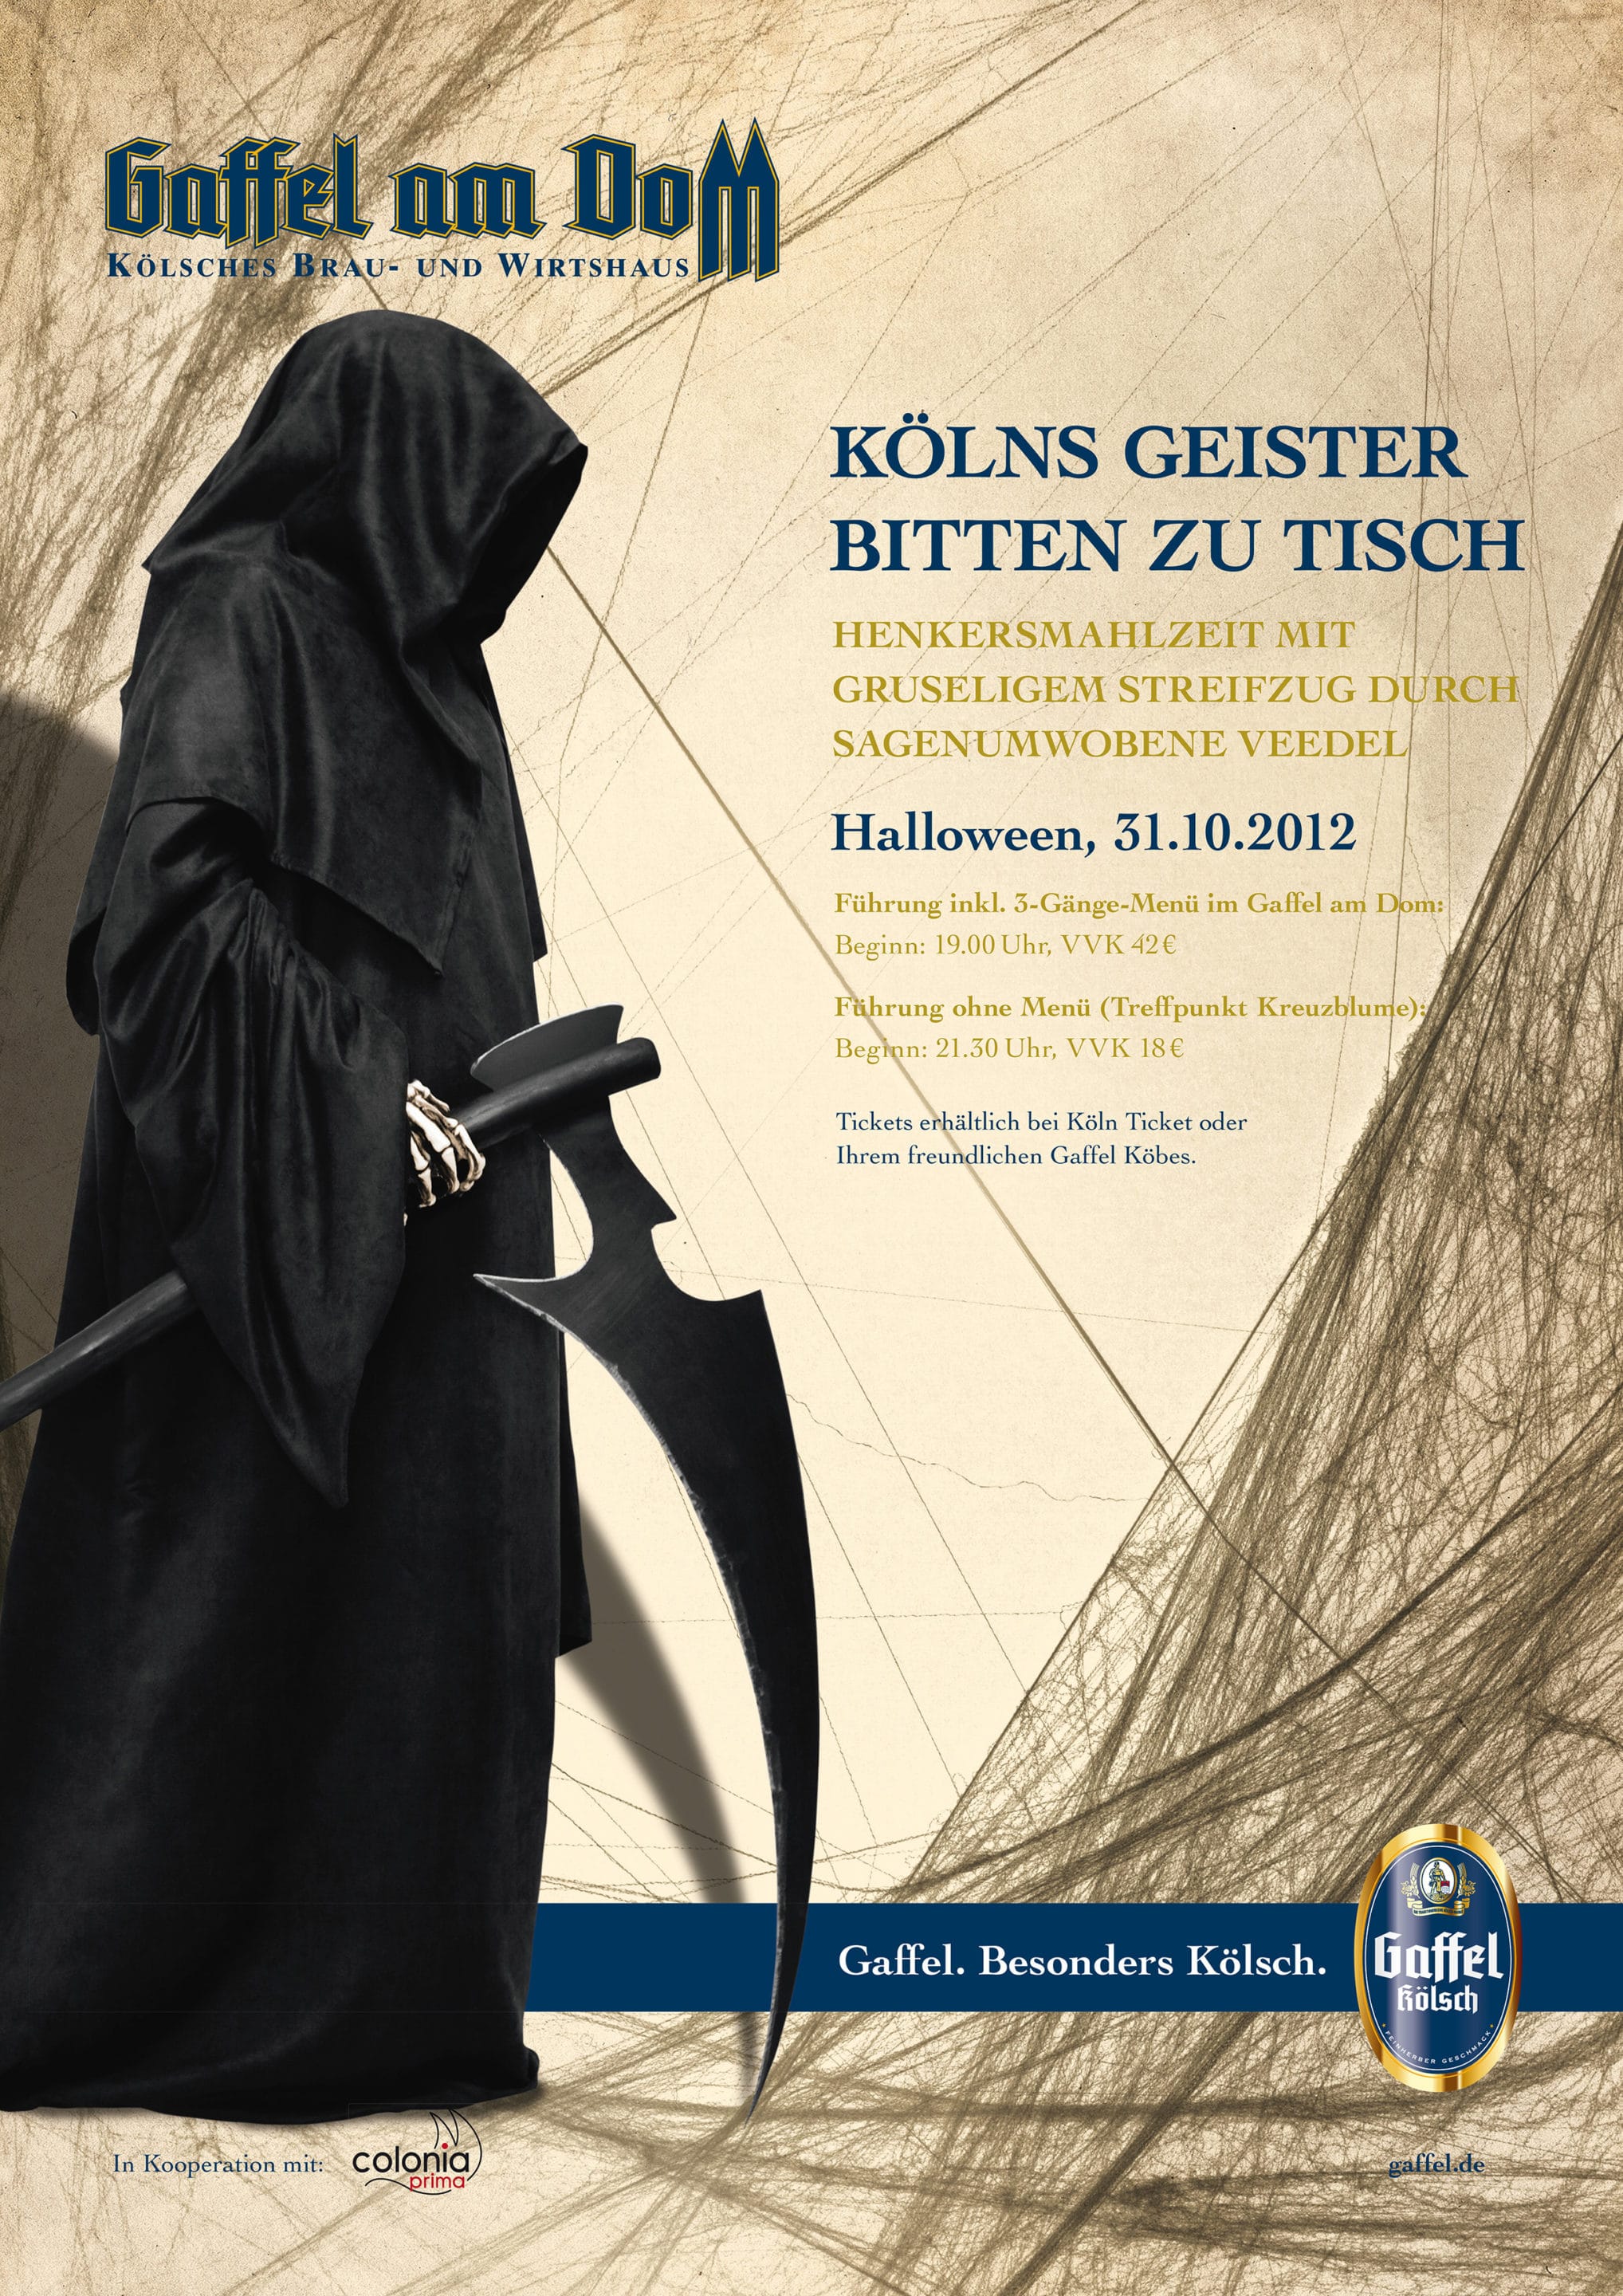 Kölns Geister bitten zu Tisch – Halloween Gruselführung mit Abendessen im Gaffel am Dom